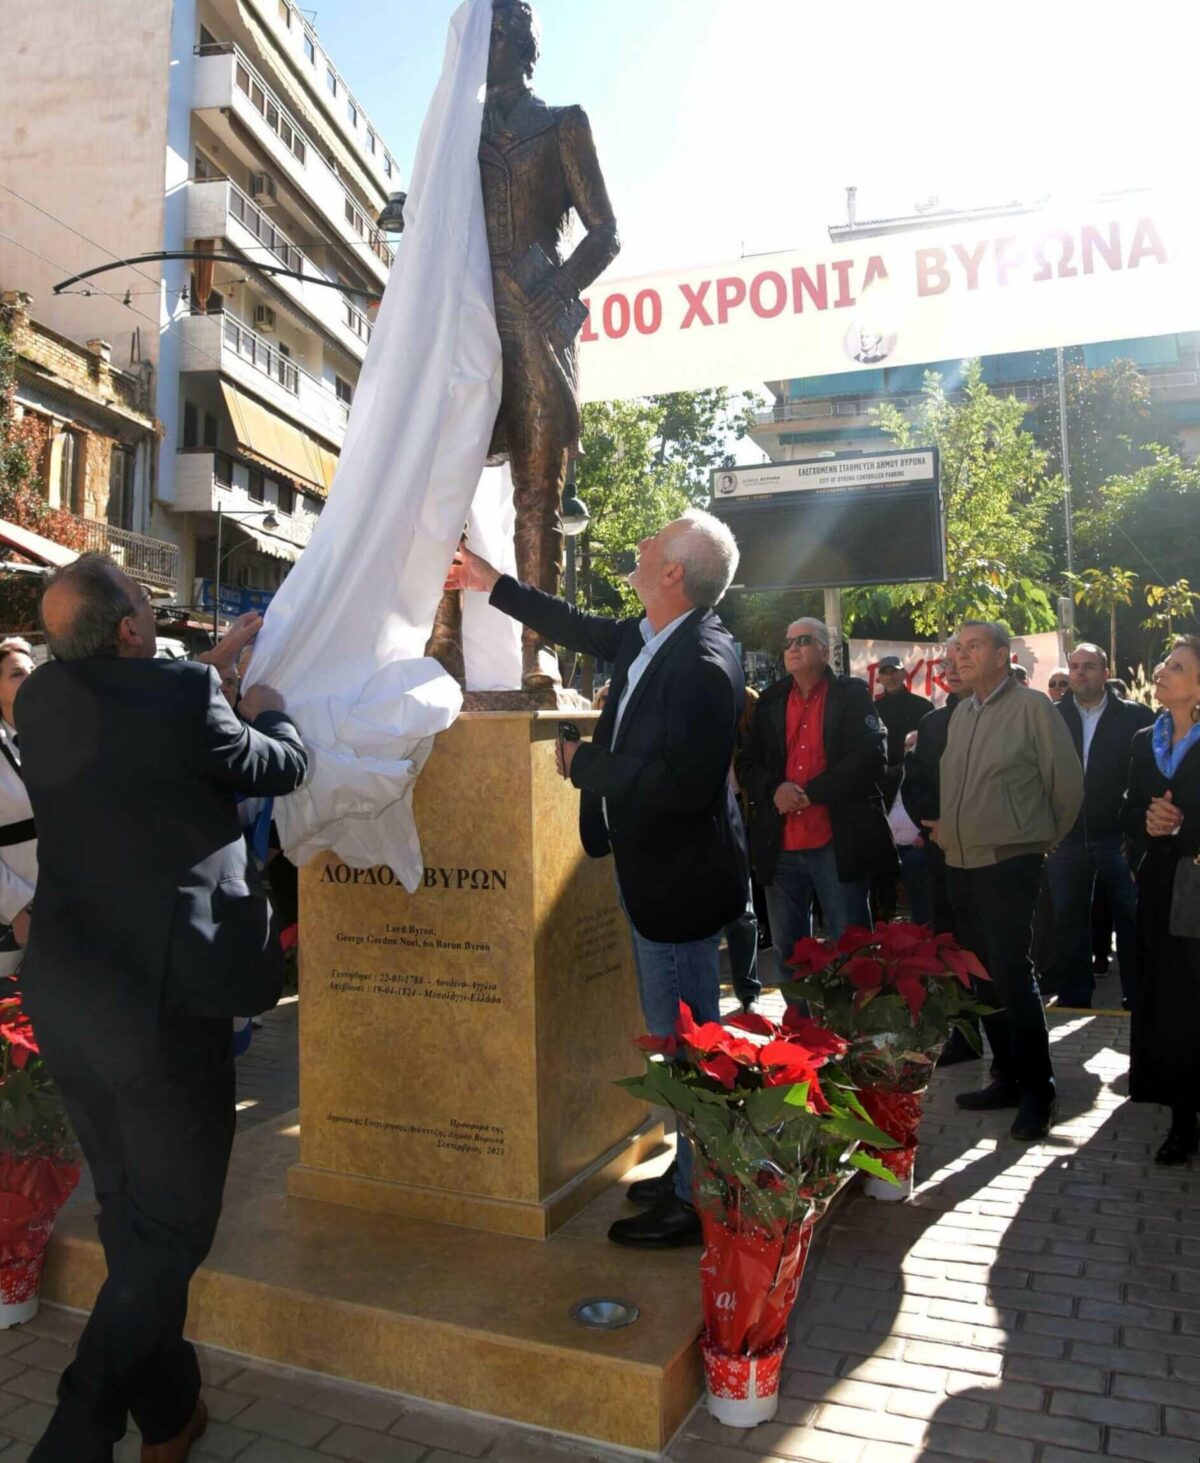 Δήμος Βύρωνα: Πραγματοποιήθηκαν τα αποκαλυπτήρια ανδριάντα του Λόρδου Βύρωνα στην πλατεία Ειρήνης